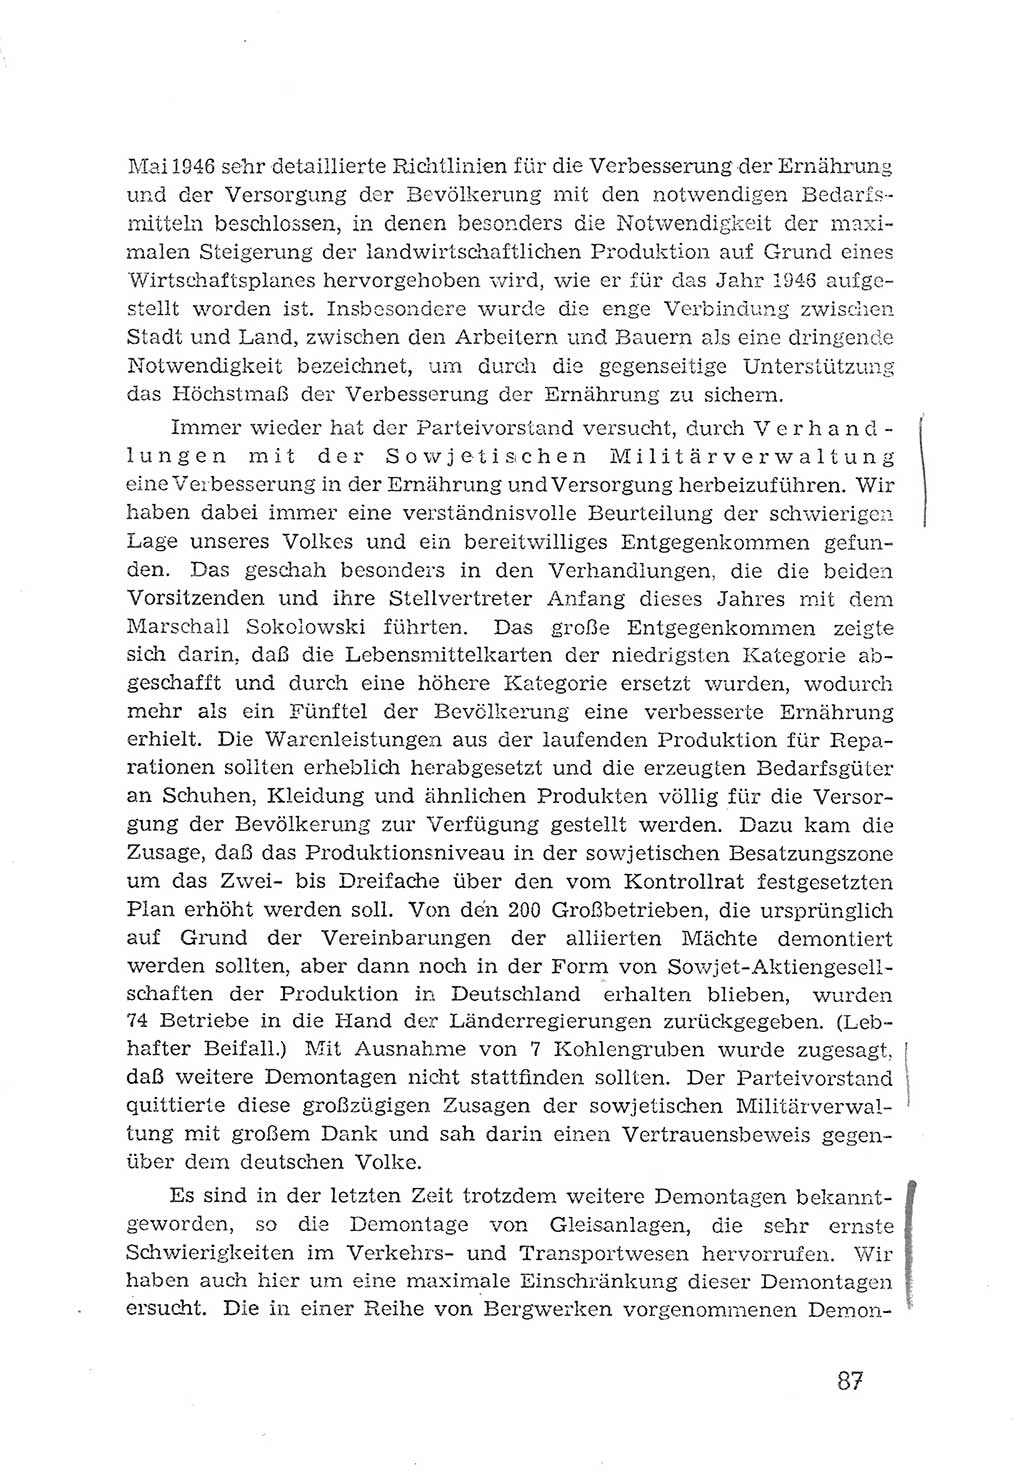 Protokoll der Verhandlungen des 2. Parteitages der Sozialistischen Einheitspartei Deutschlands (SED) [Sowjetische Besatzungszone (SBZ) Deutschlands] 1947, Seite 87 (Prot. Verh. 2. PT SED SBZ Dtl. 1947, S. 87)